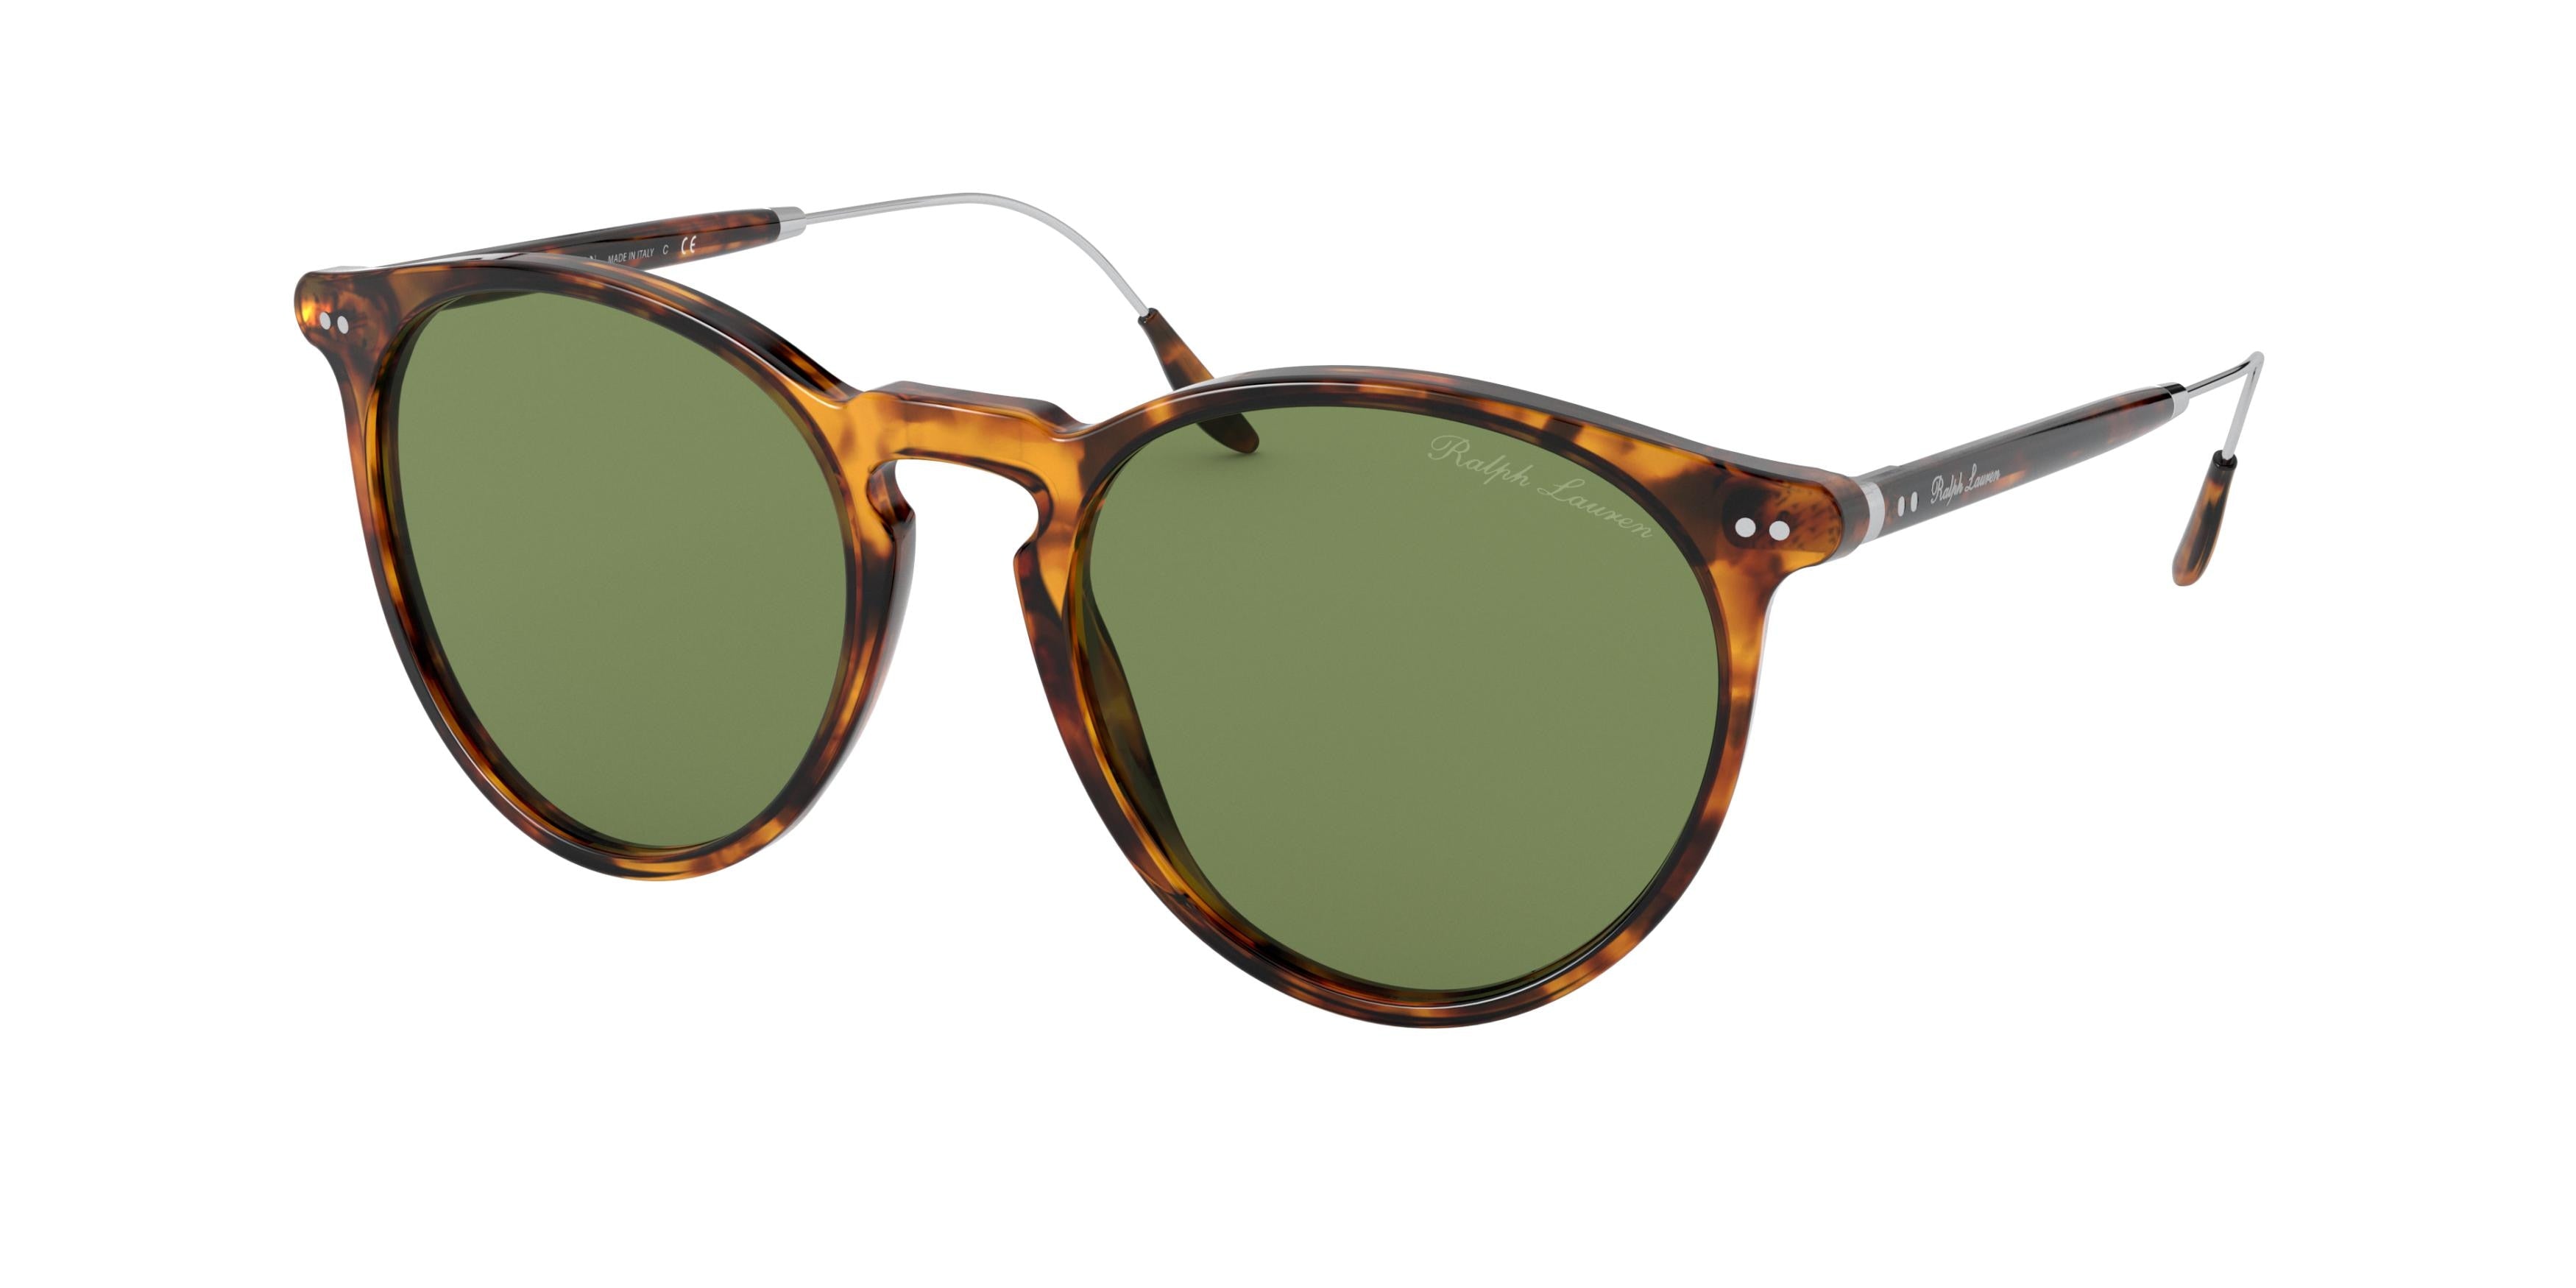 Ralph Lauren RL8181P Phantos Sunglasses